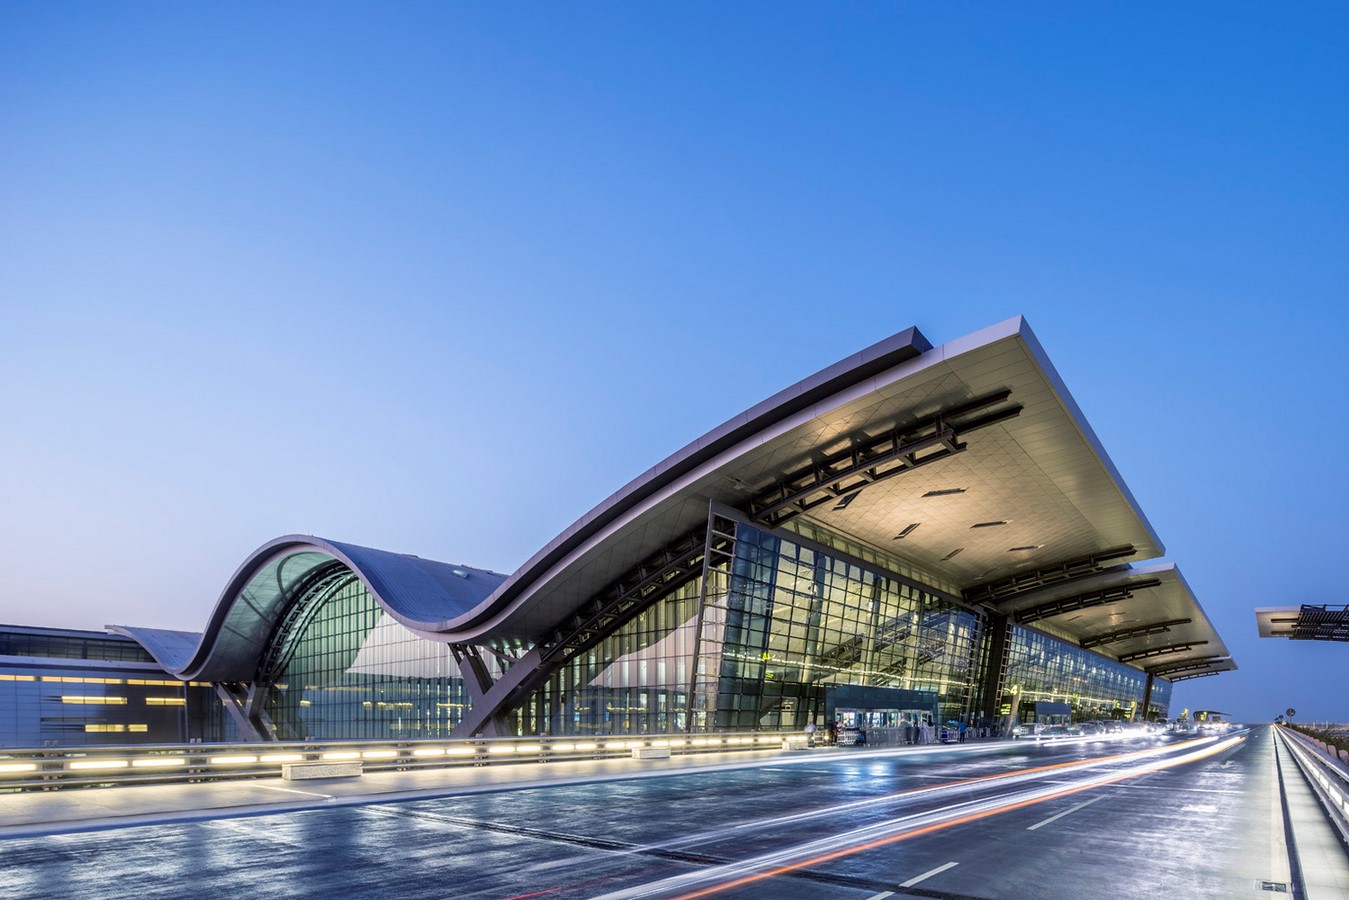 10 Diseños de aeropuertos inspiradores en todo el mundo - Pliega16